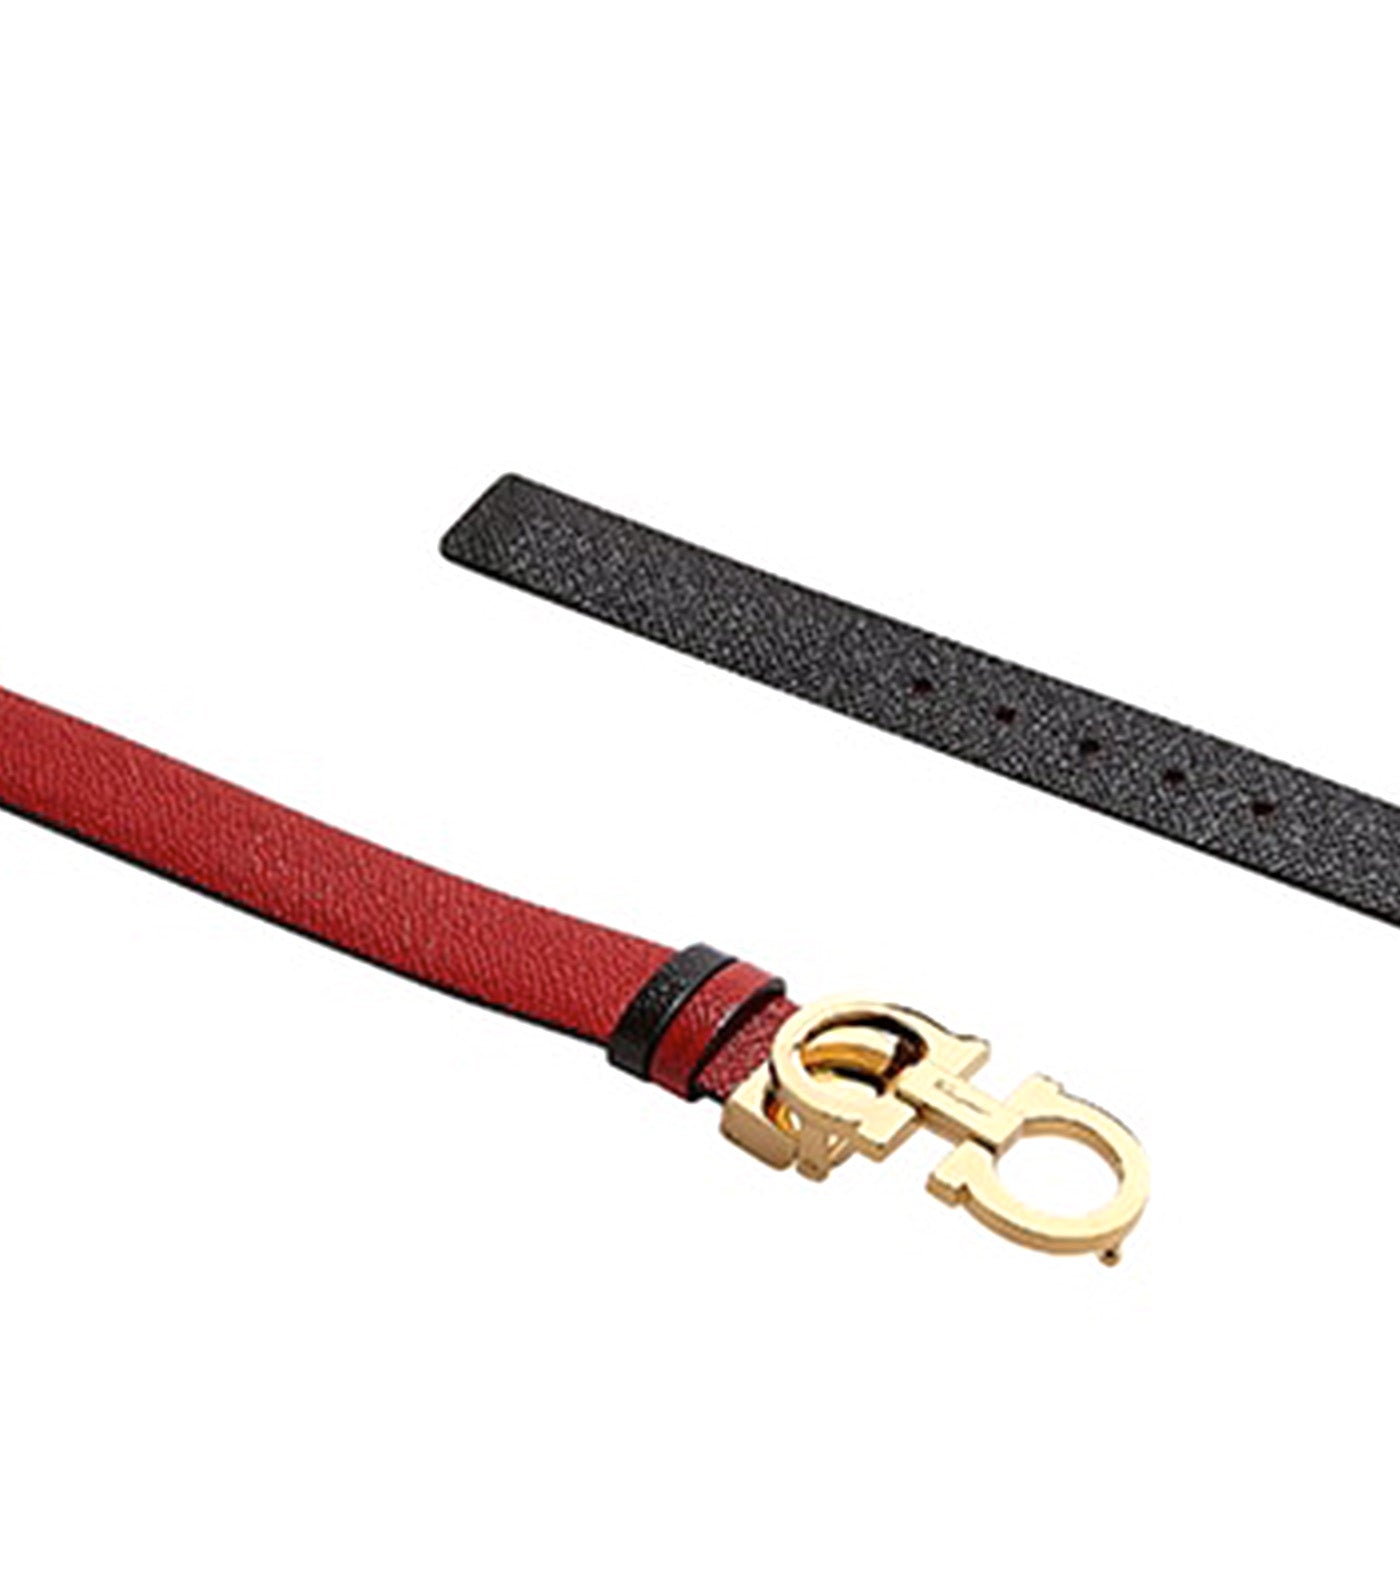 Reversible and Adjustable Gancini Belt Lipstick Red/Black